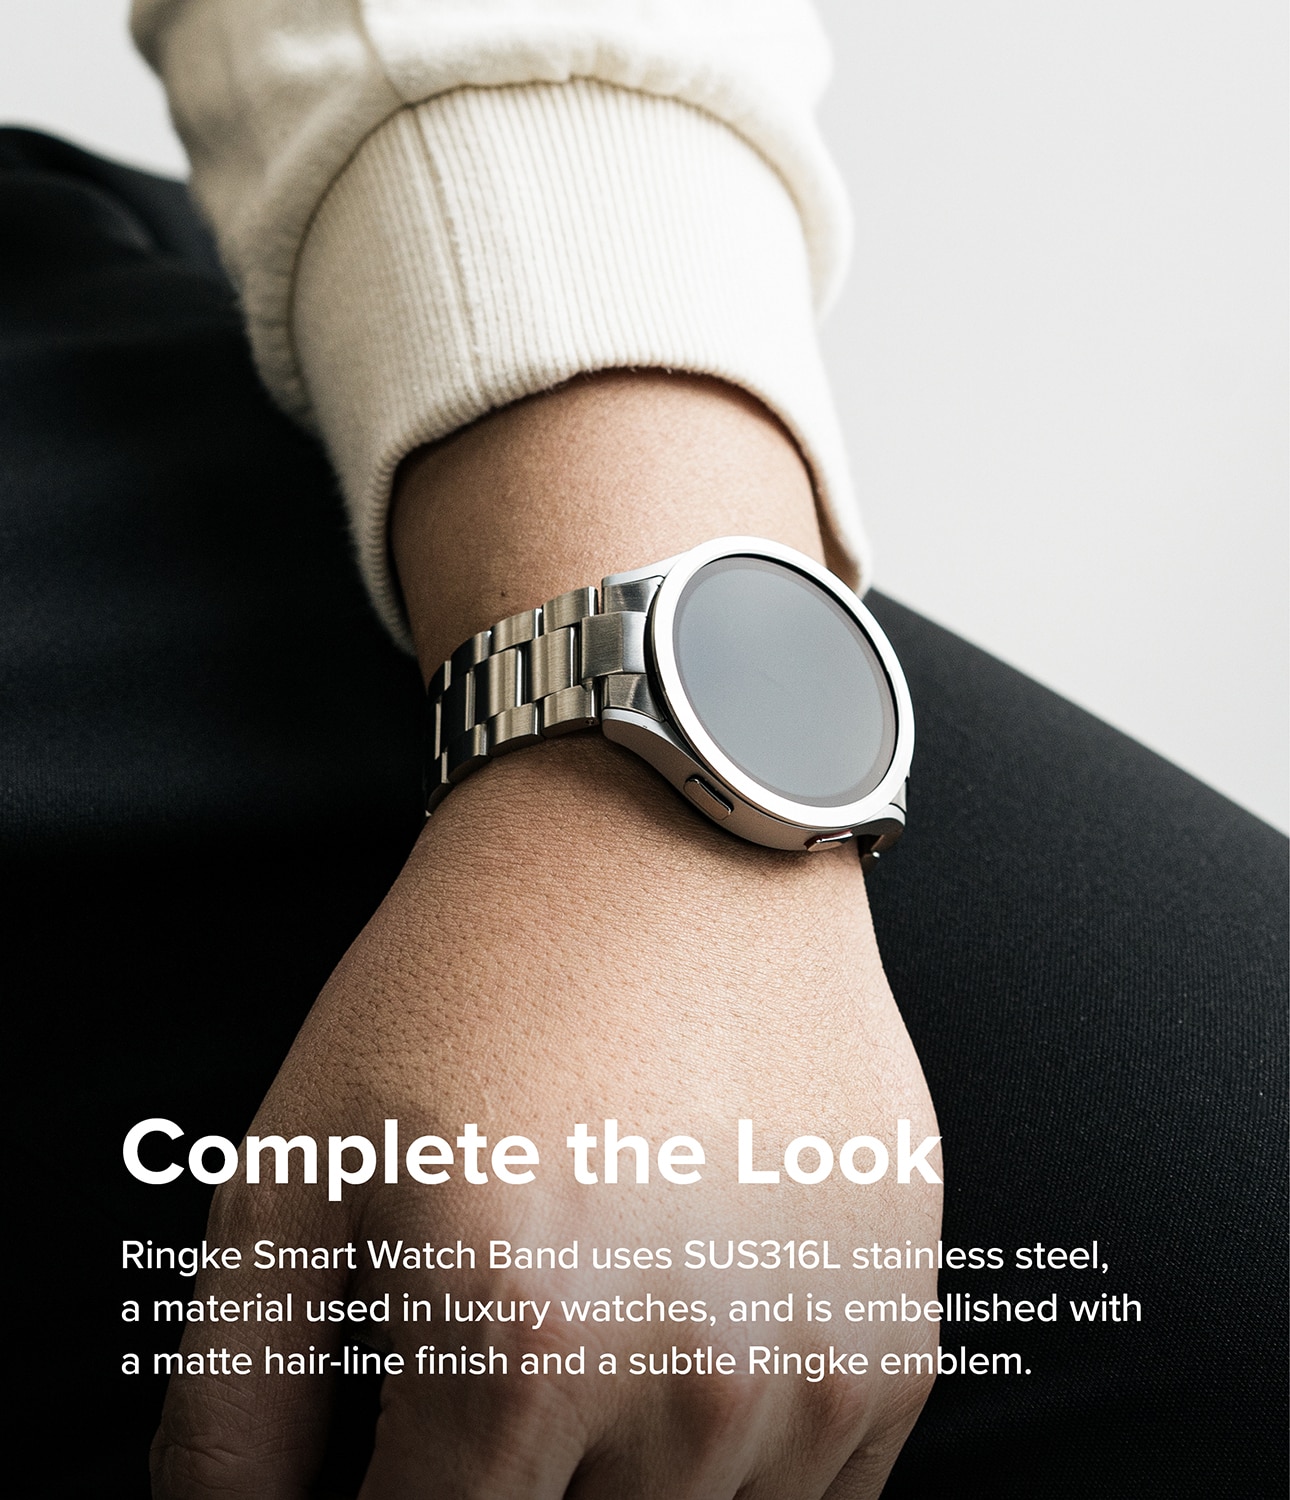 Metal One Correa Samsung Galaxy Watch 6 40mm Plata